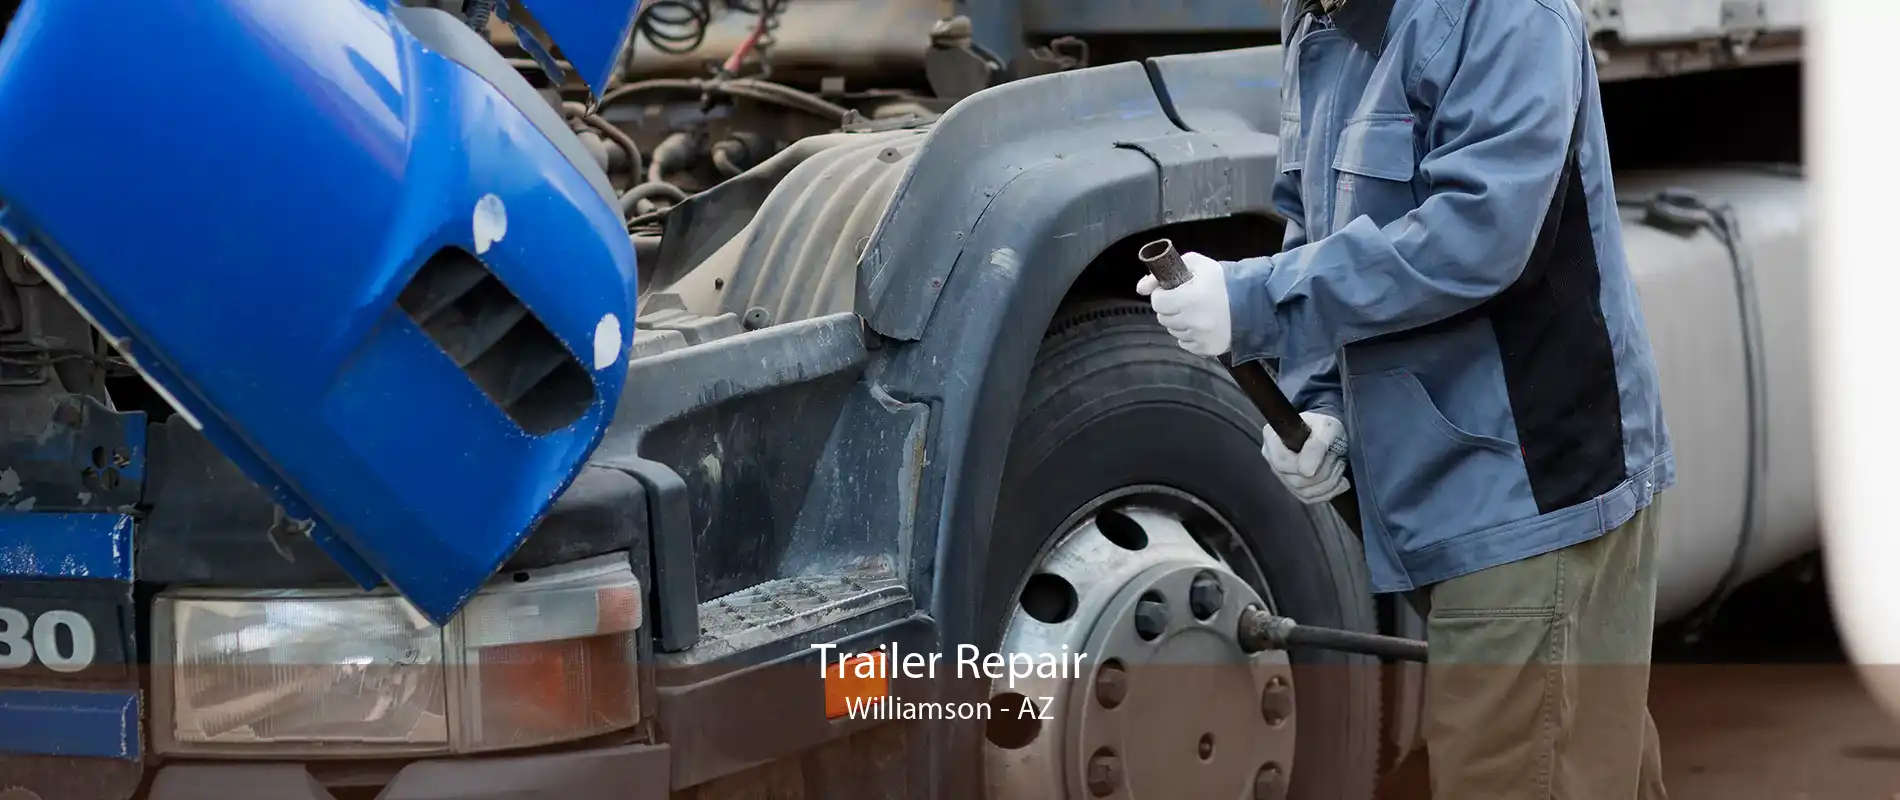 Trailer Repair Williamson - AZ